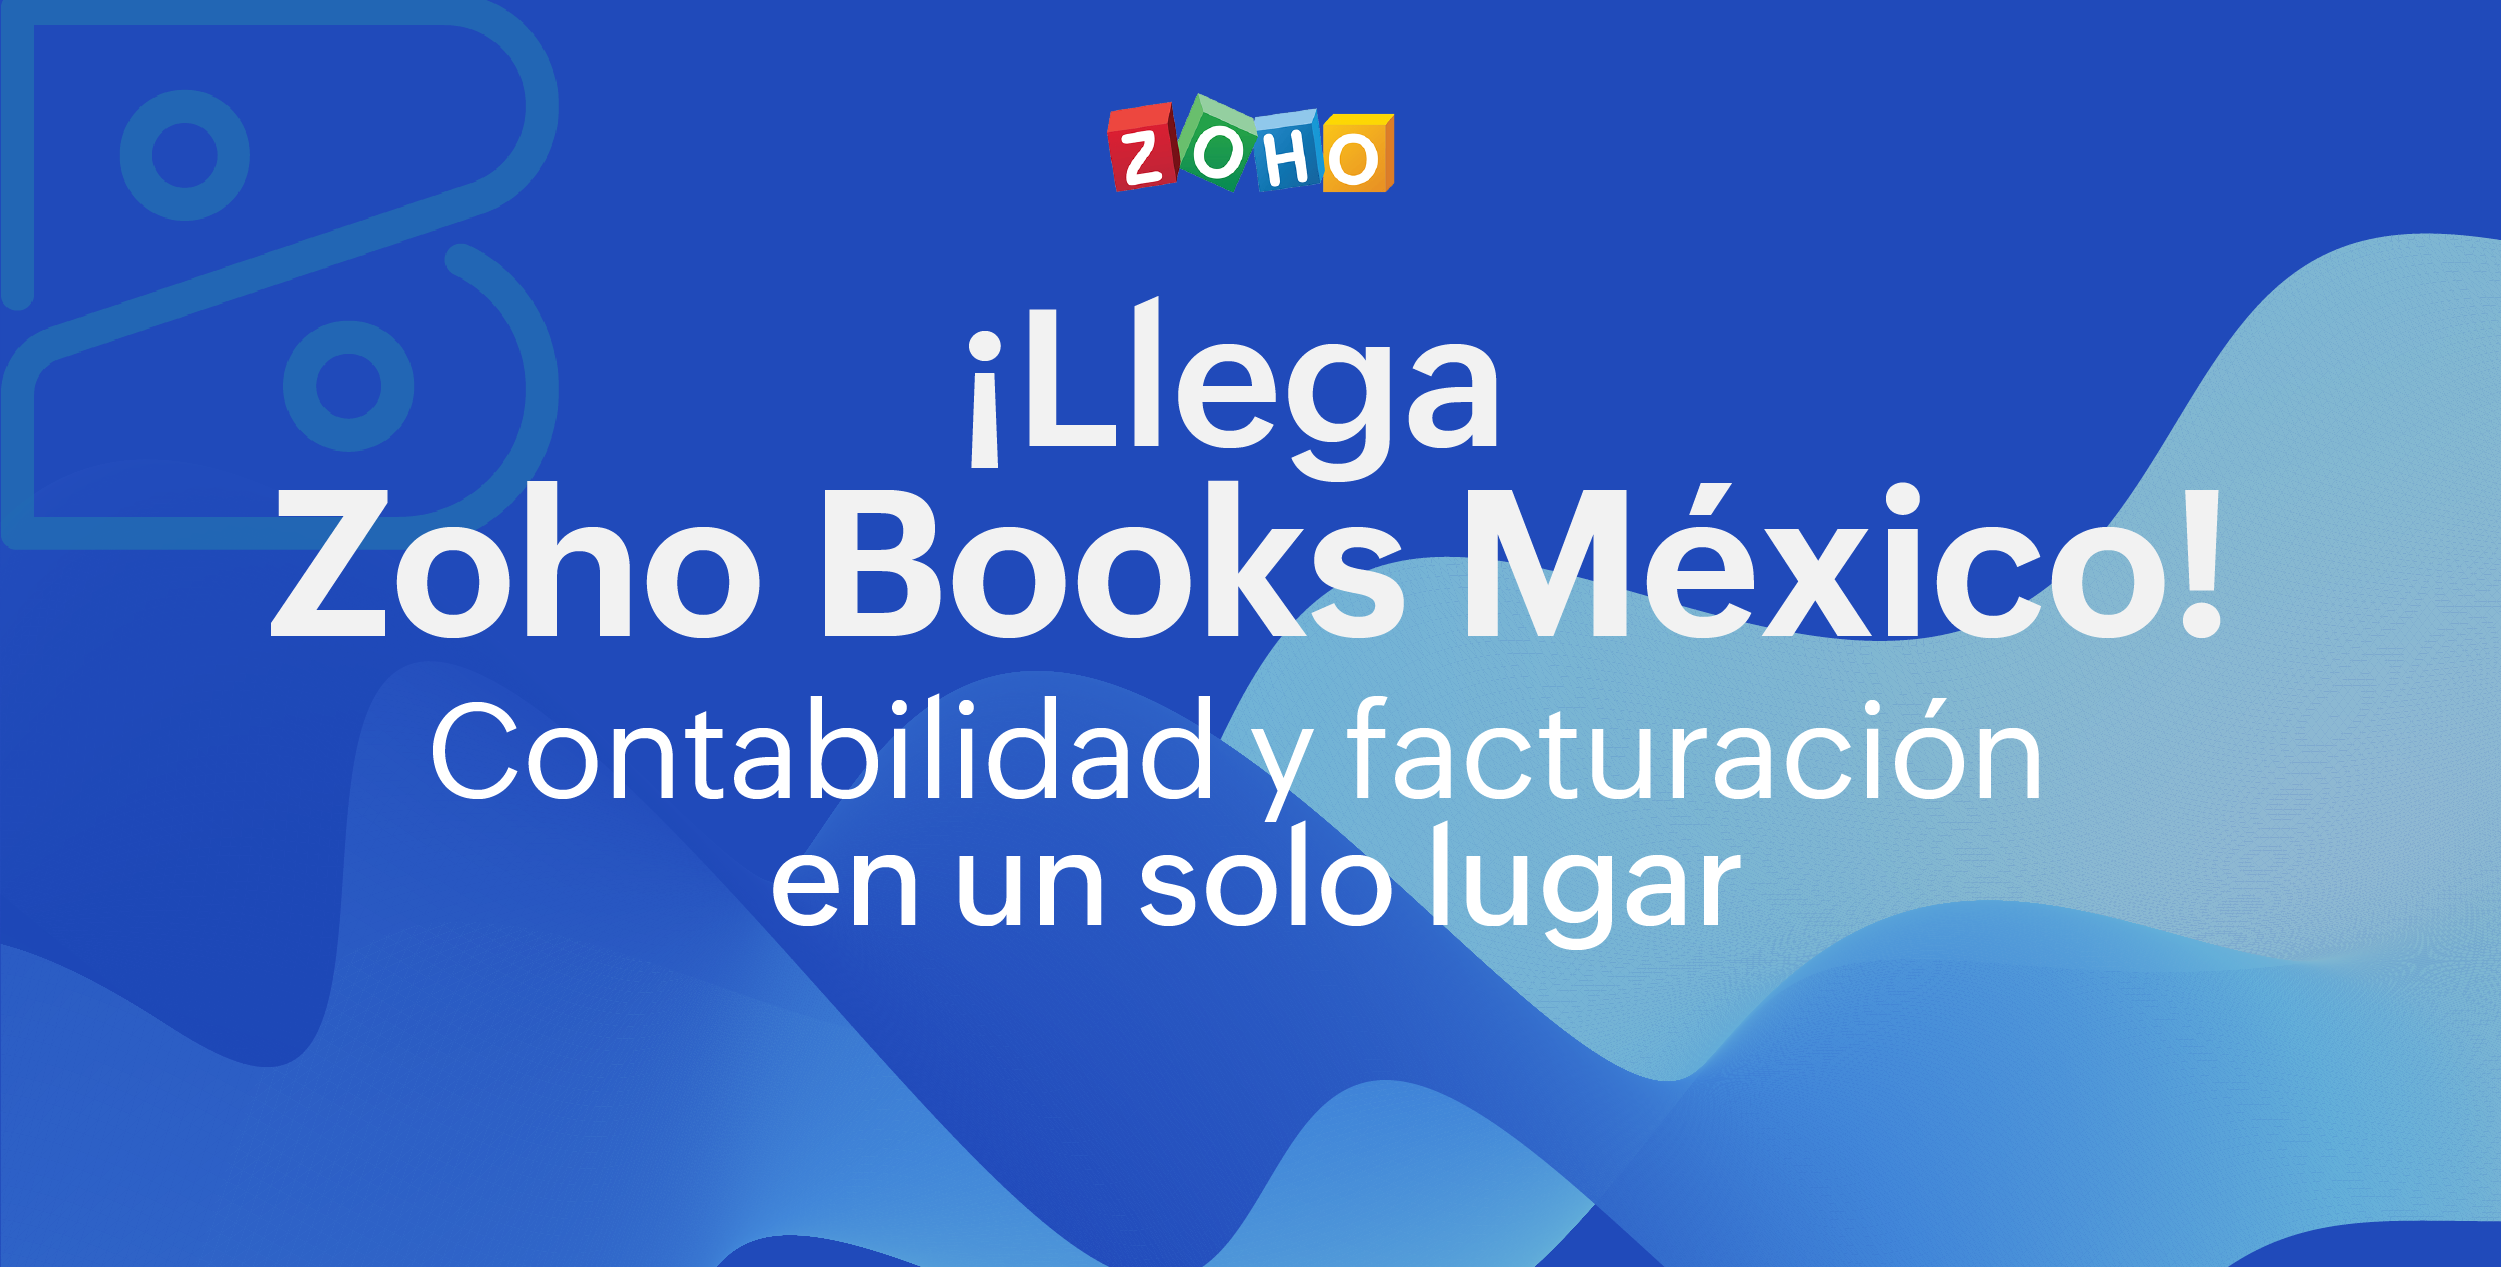 ¡Llega Zoho Books a México!